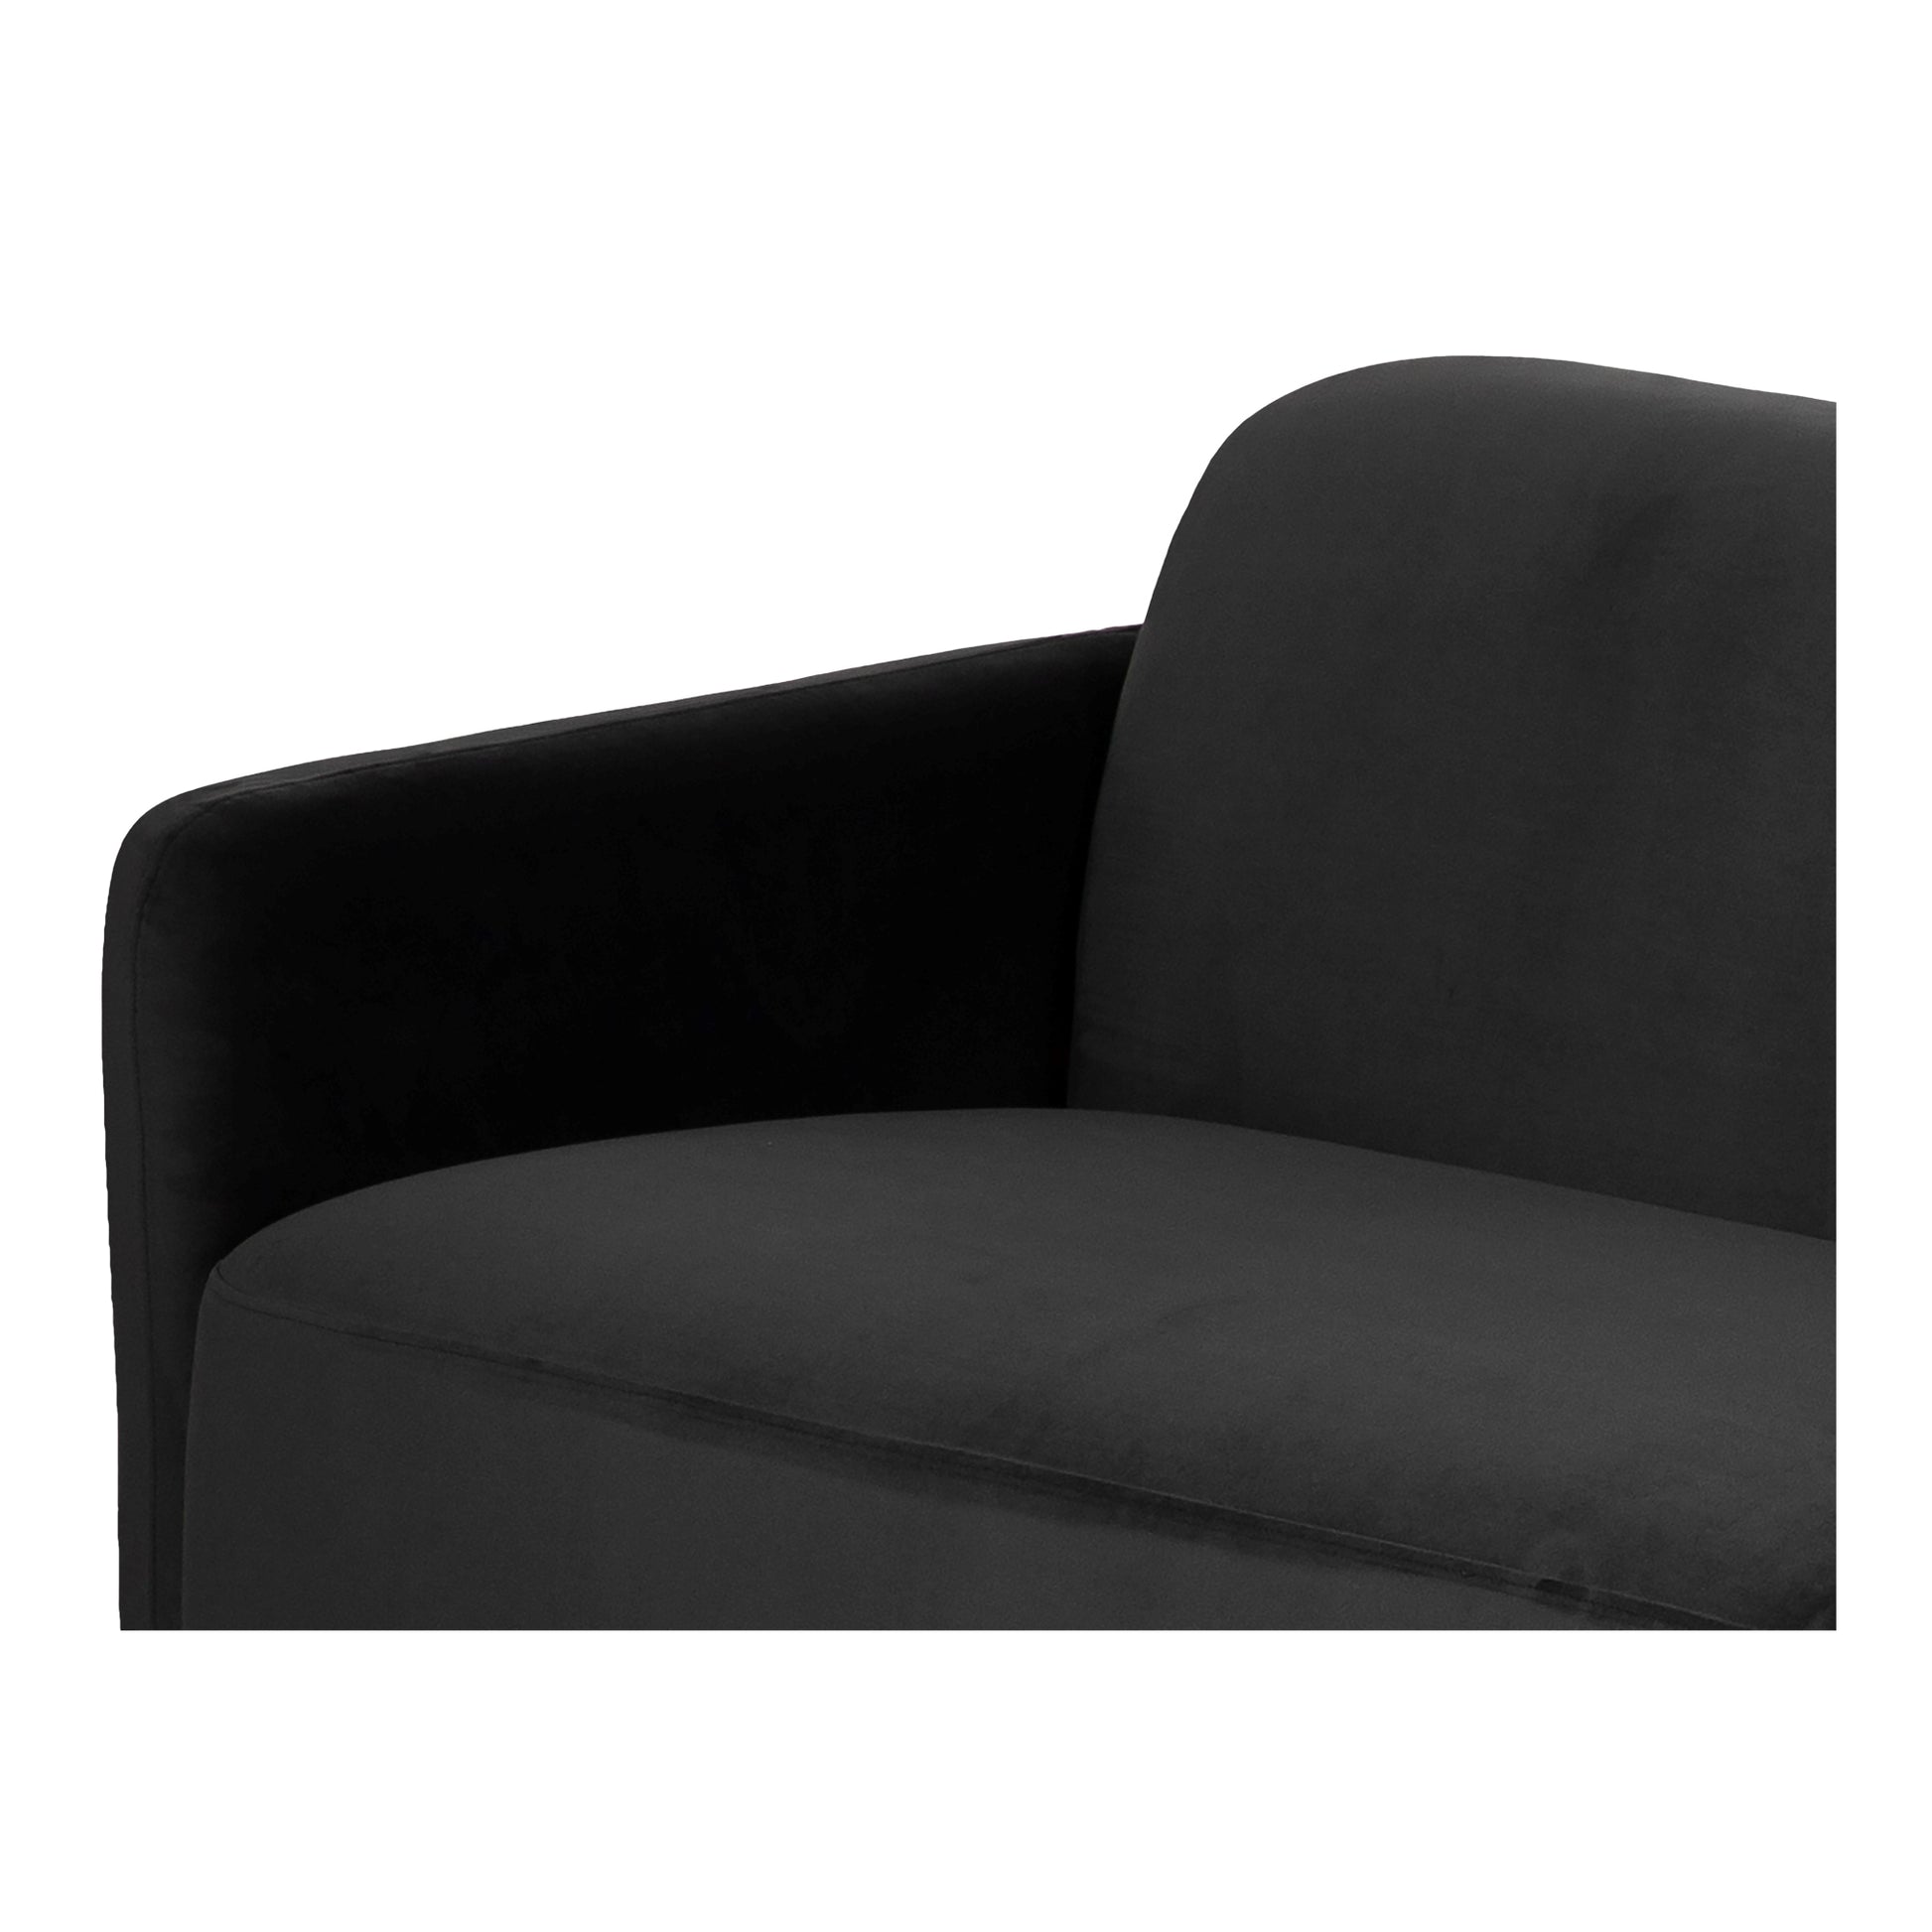 Moes Home Sofas Fallon Grey Contemporary Furniture